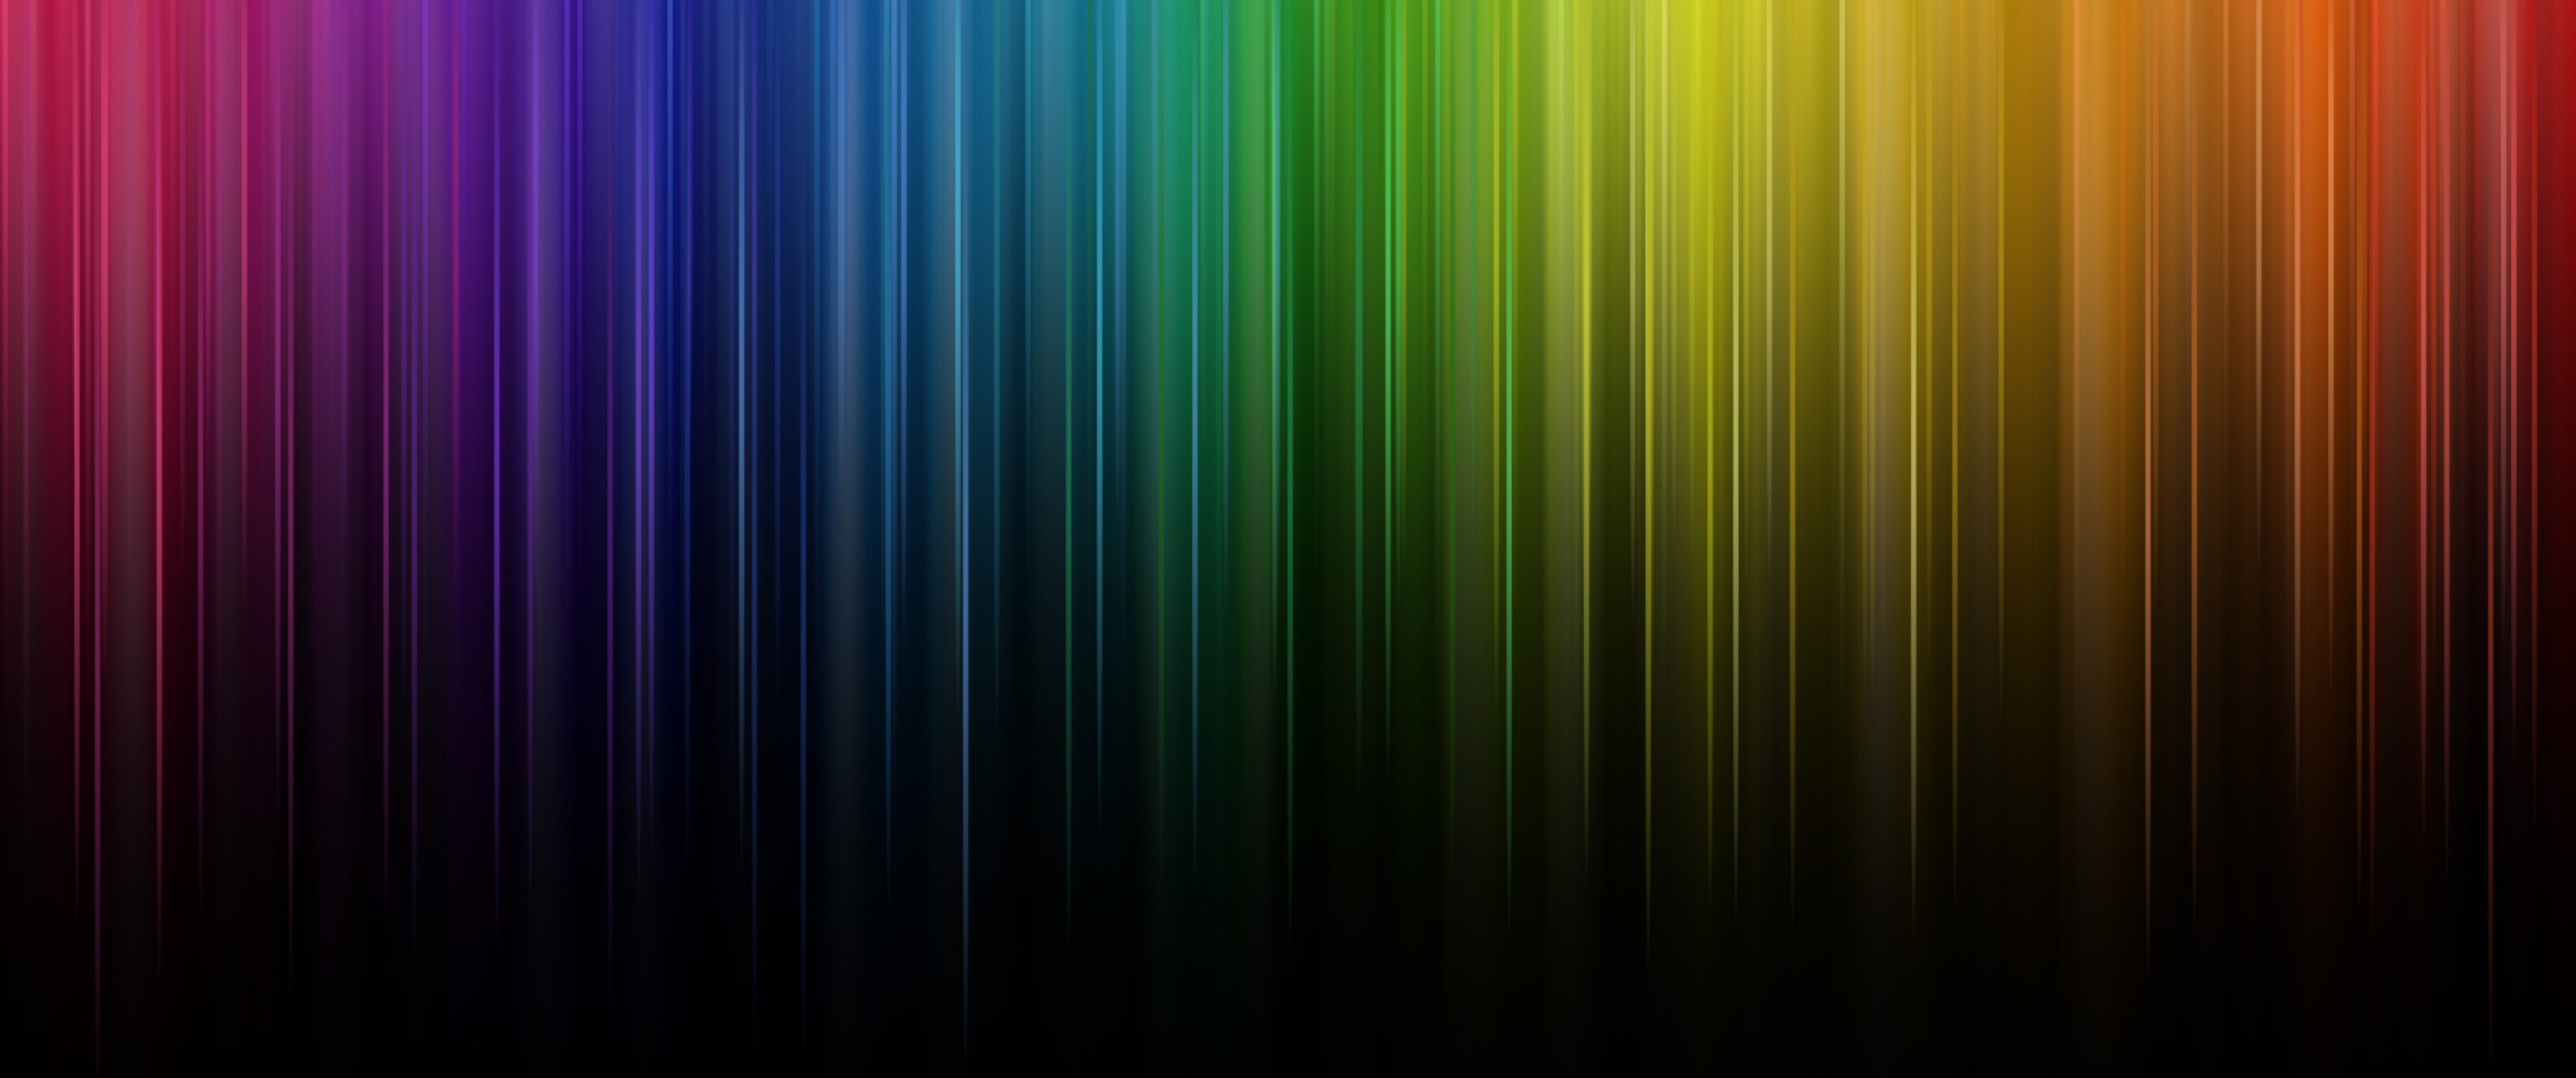 Spectrum Wallpaper 4k Rainbow Colors Colorful